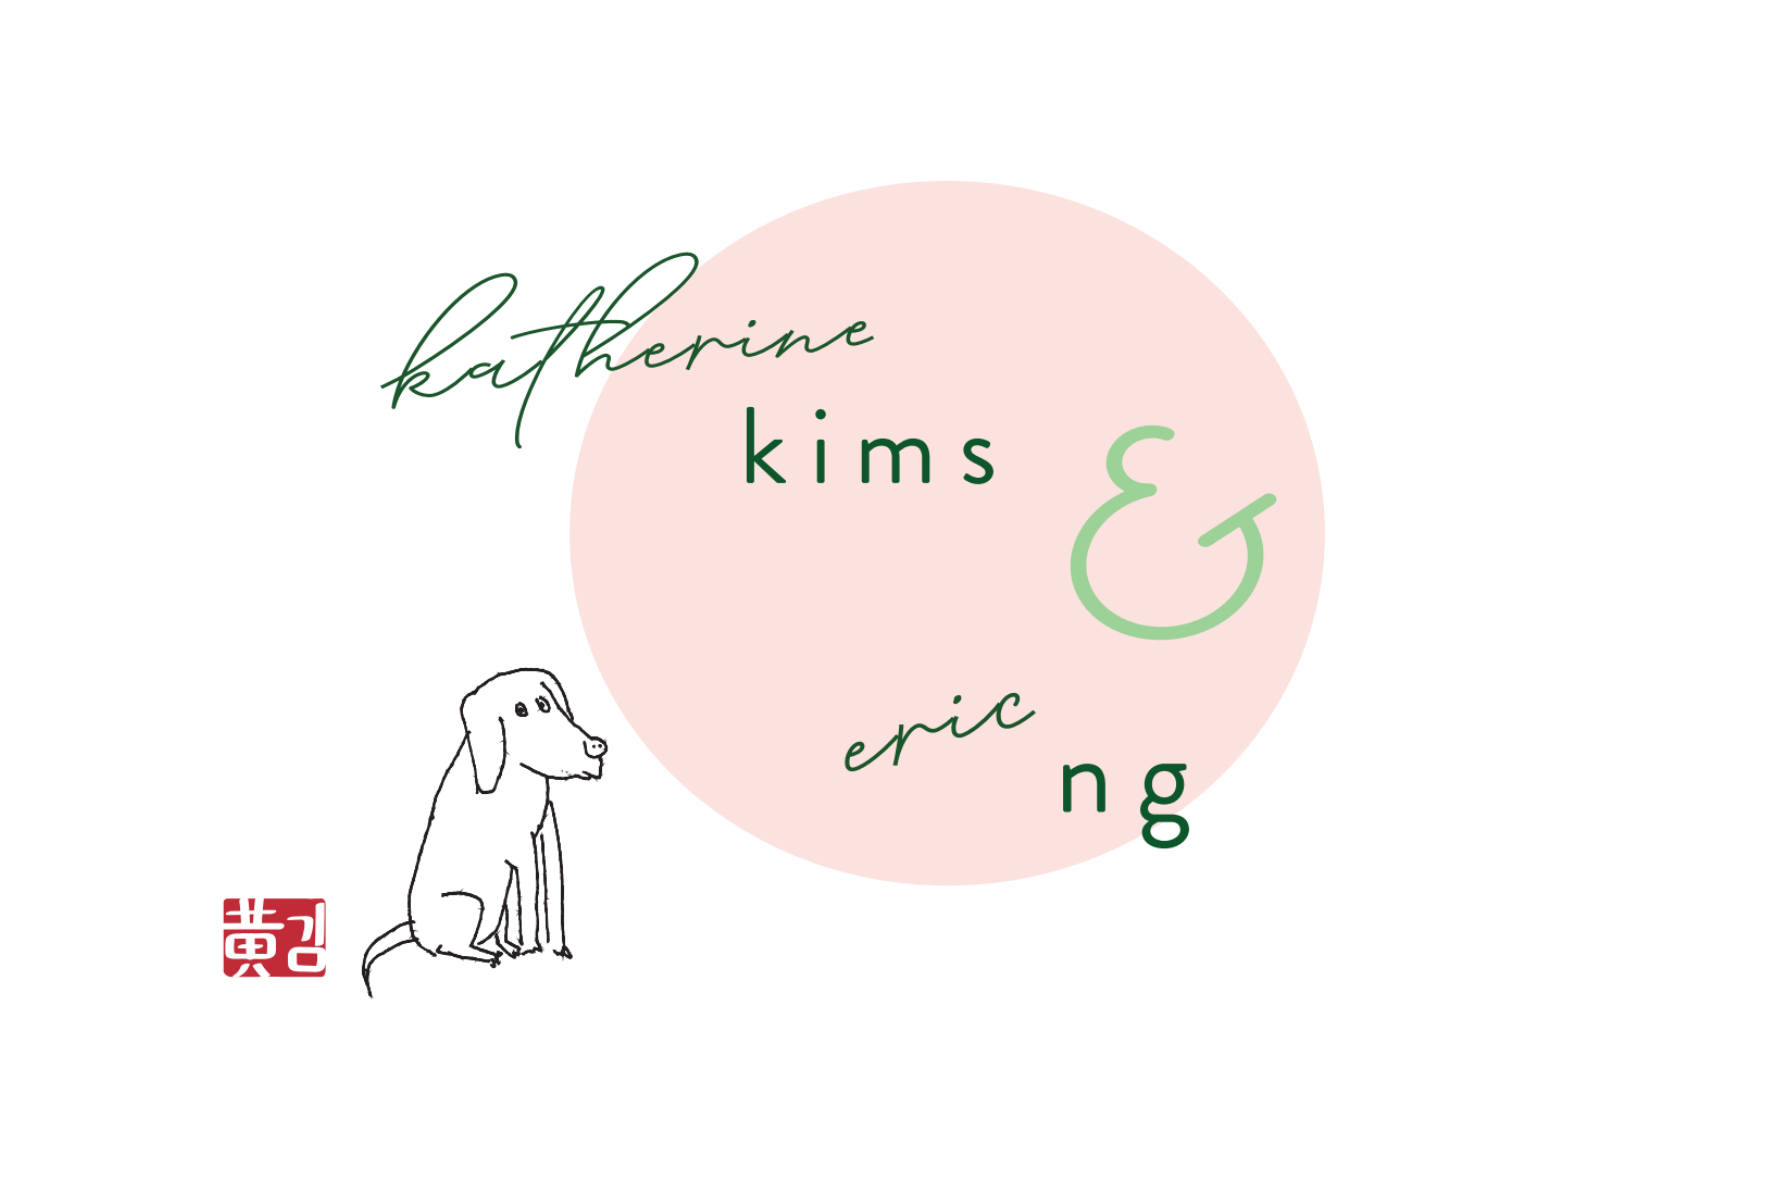 Kims family logo